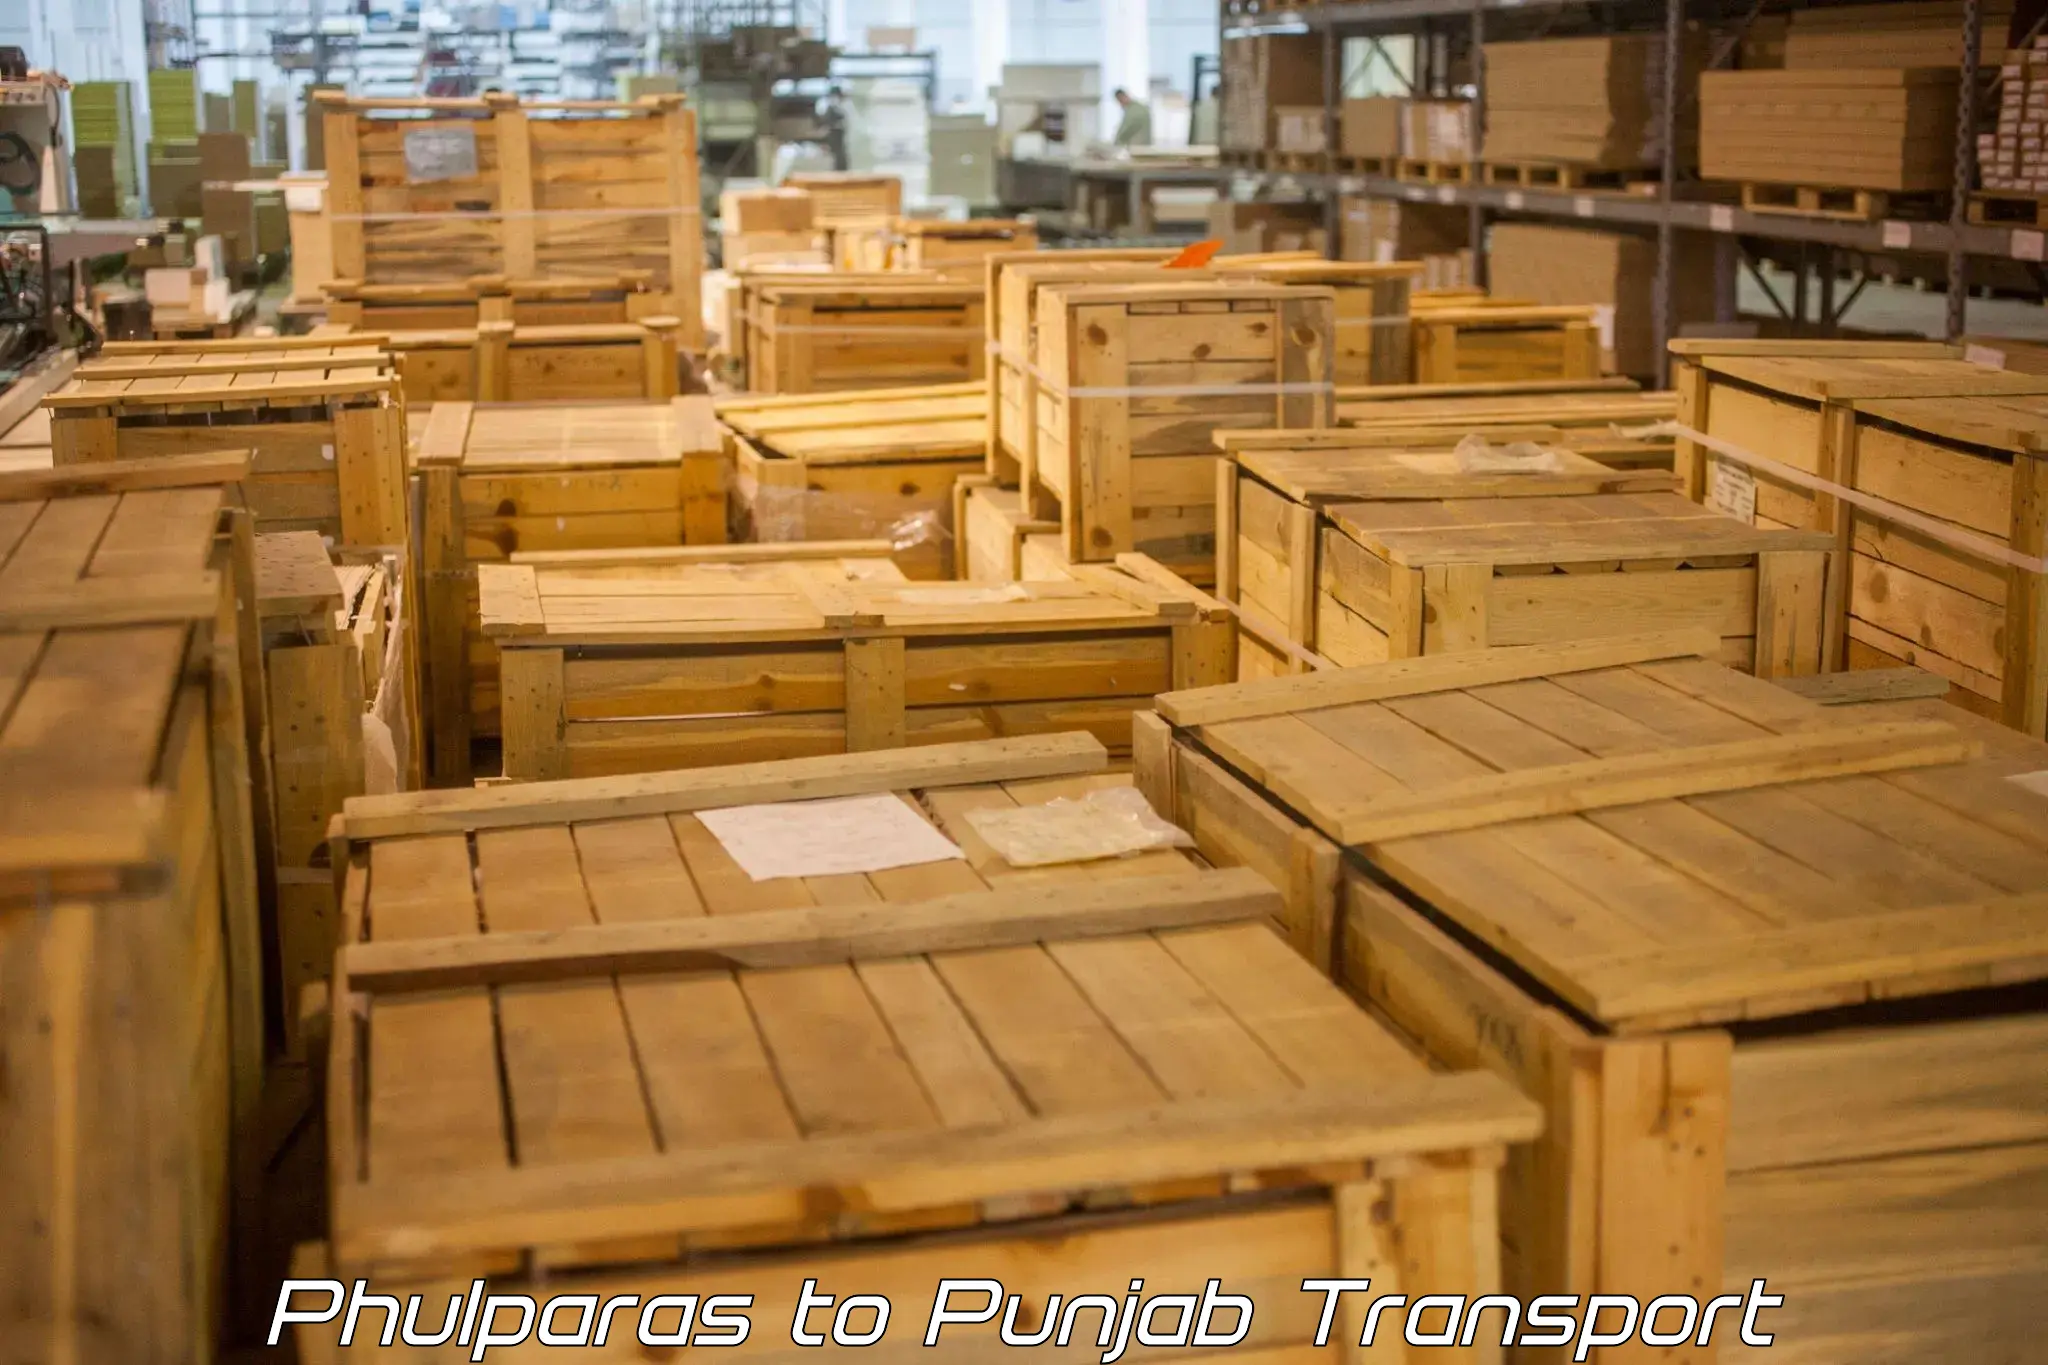 International cargo transportation services Phulparas to Fatehgarh Sahib